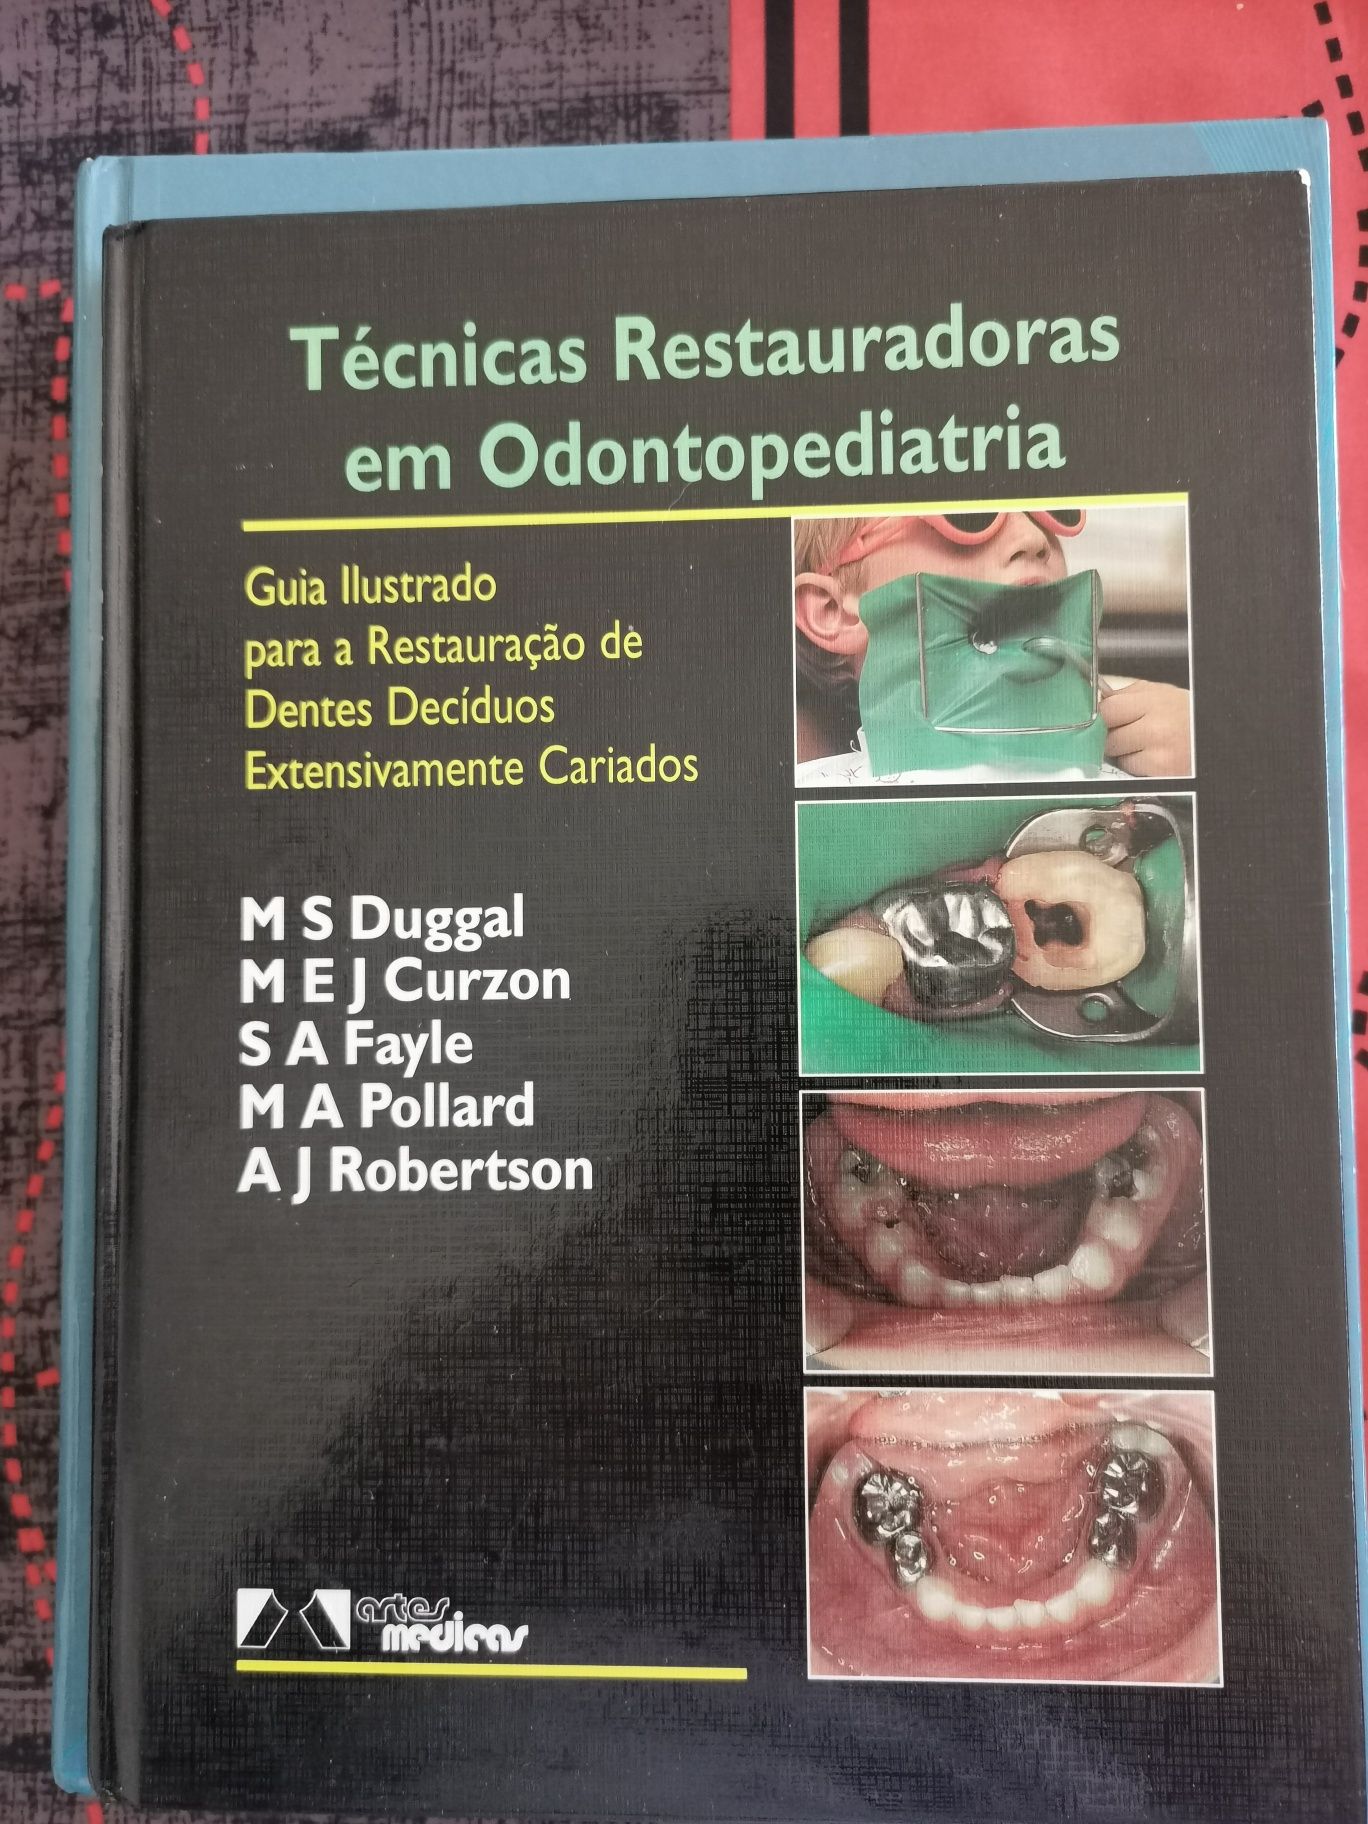 Livros de Odontopediatria